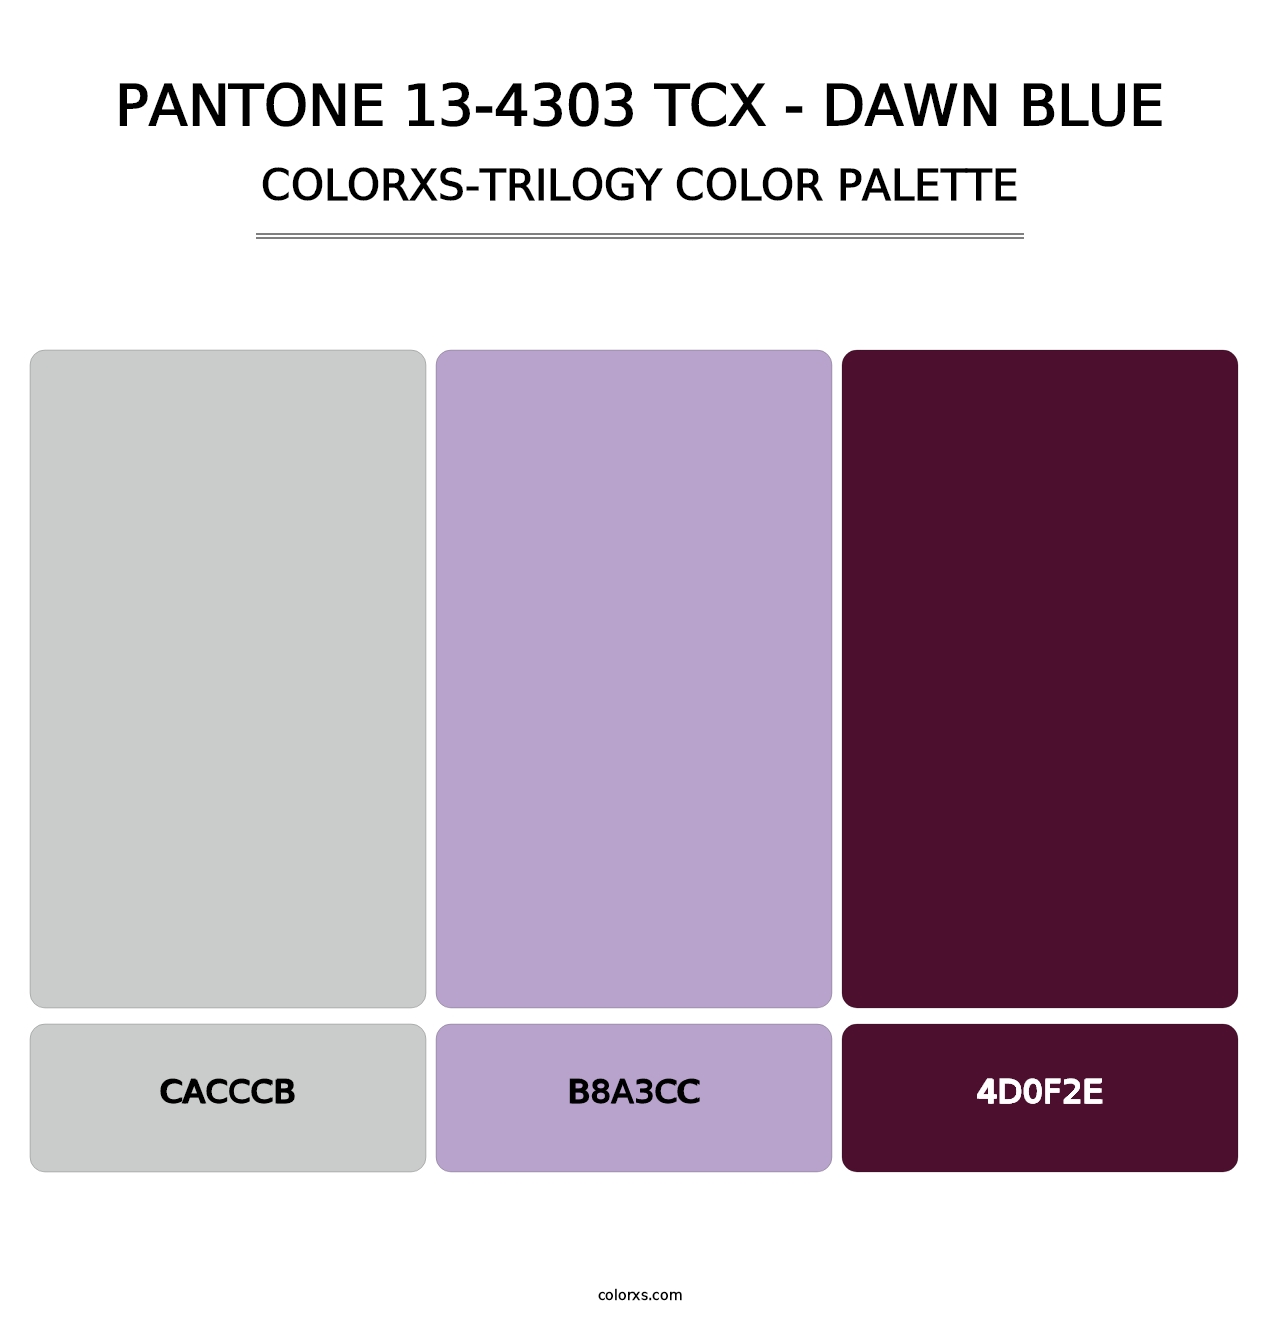 PANTONE 13-4303 TCX - Dawn Blue - Colorxs Trilogy Palette